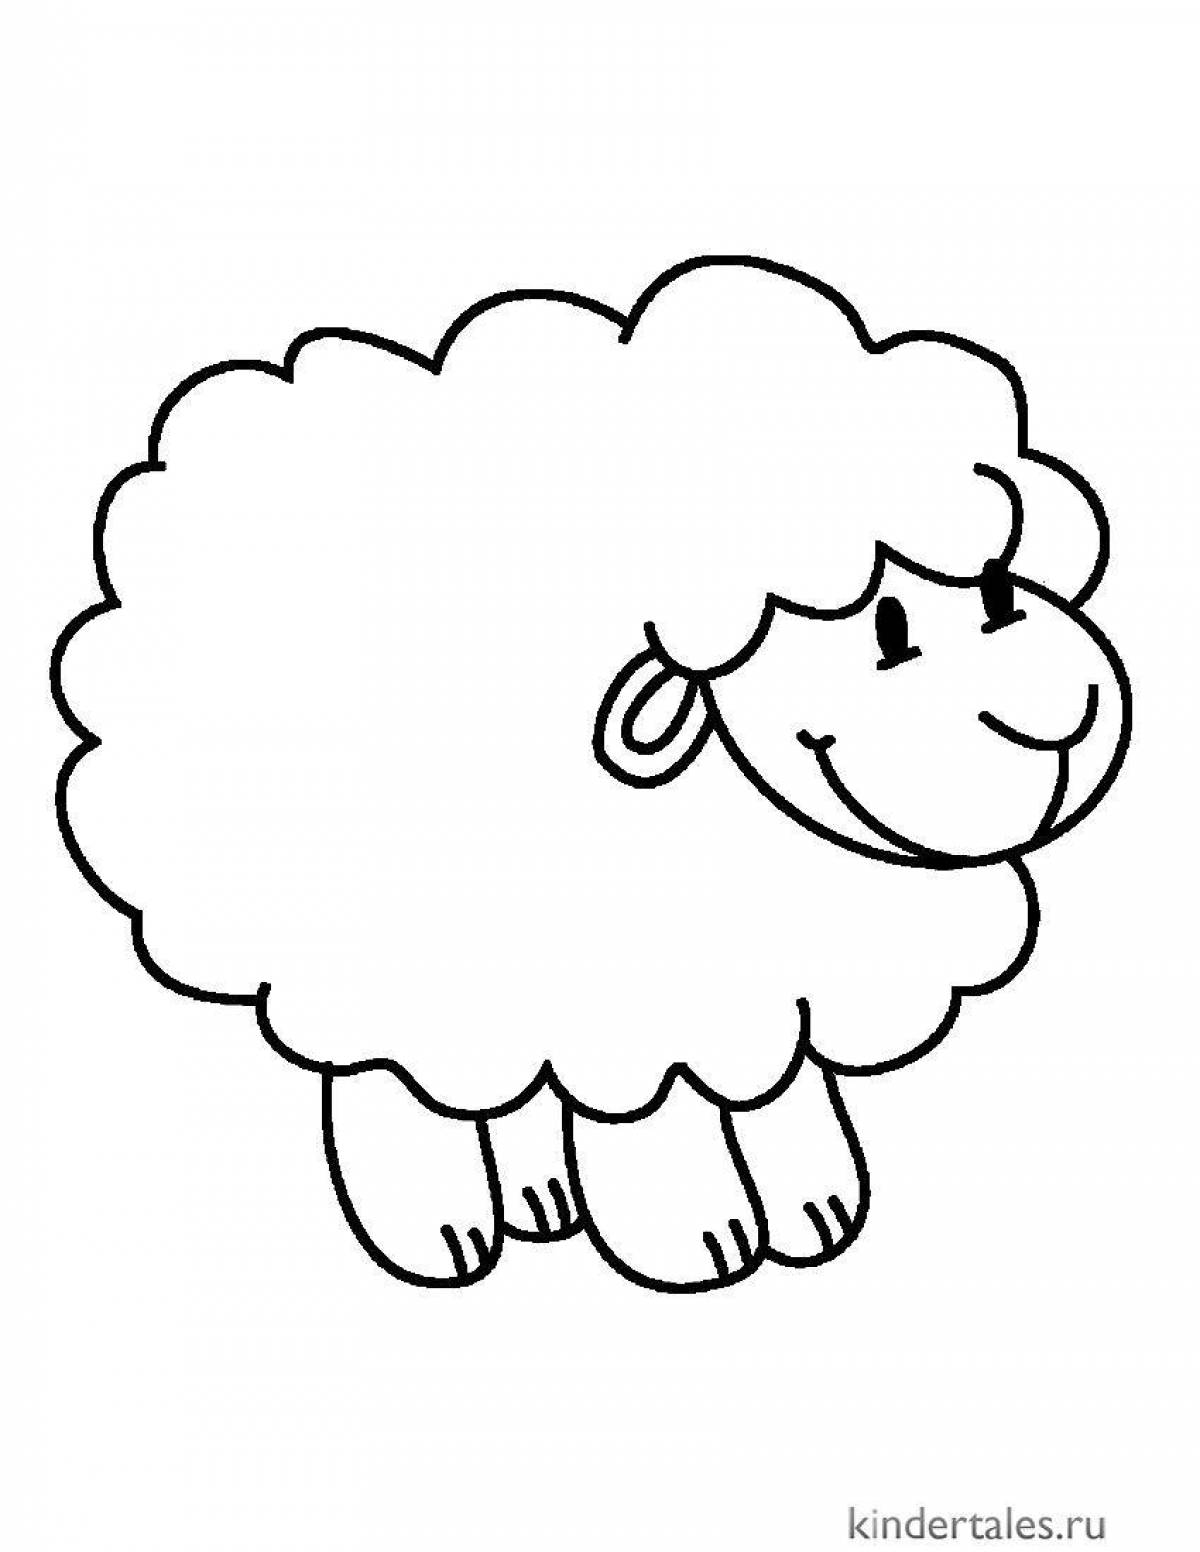 Забавная раскраска овечка для детей 4-5 лет